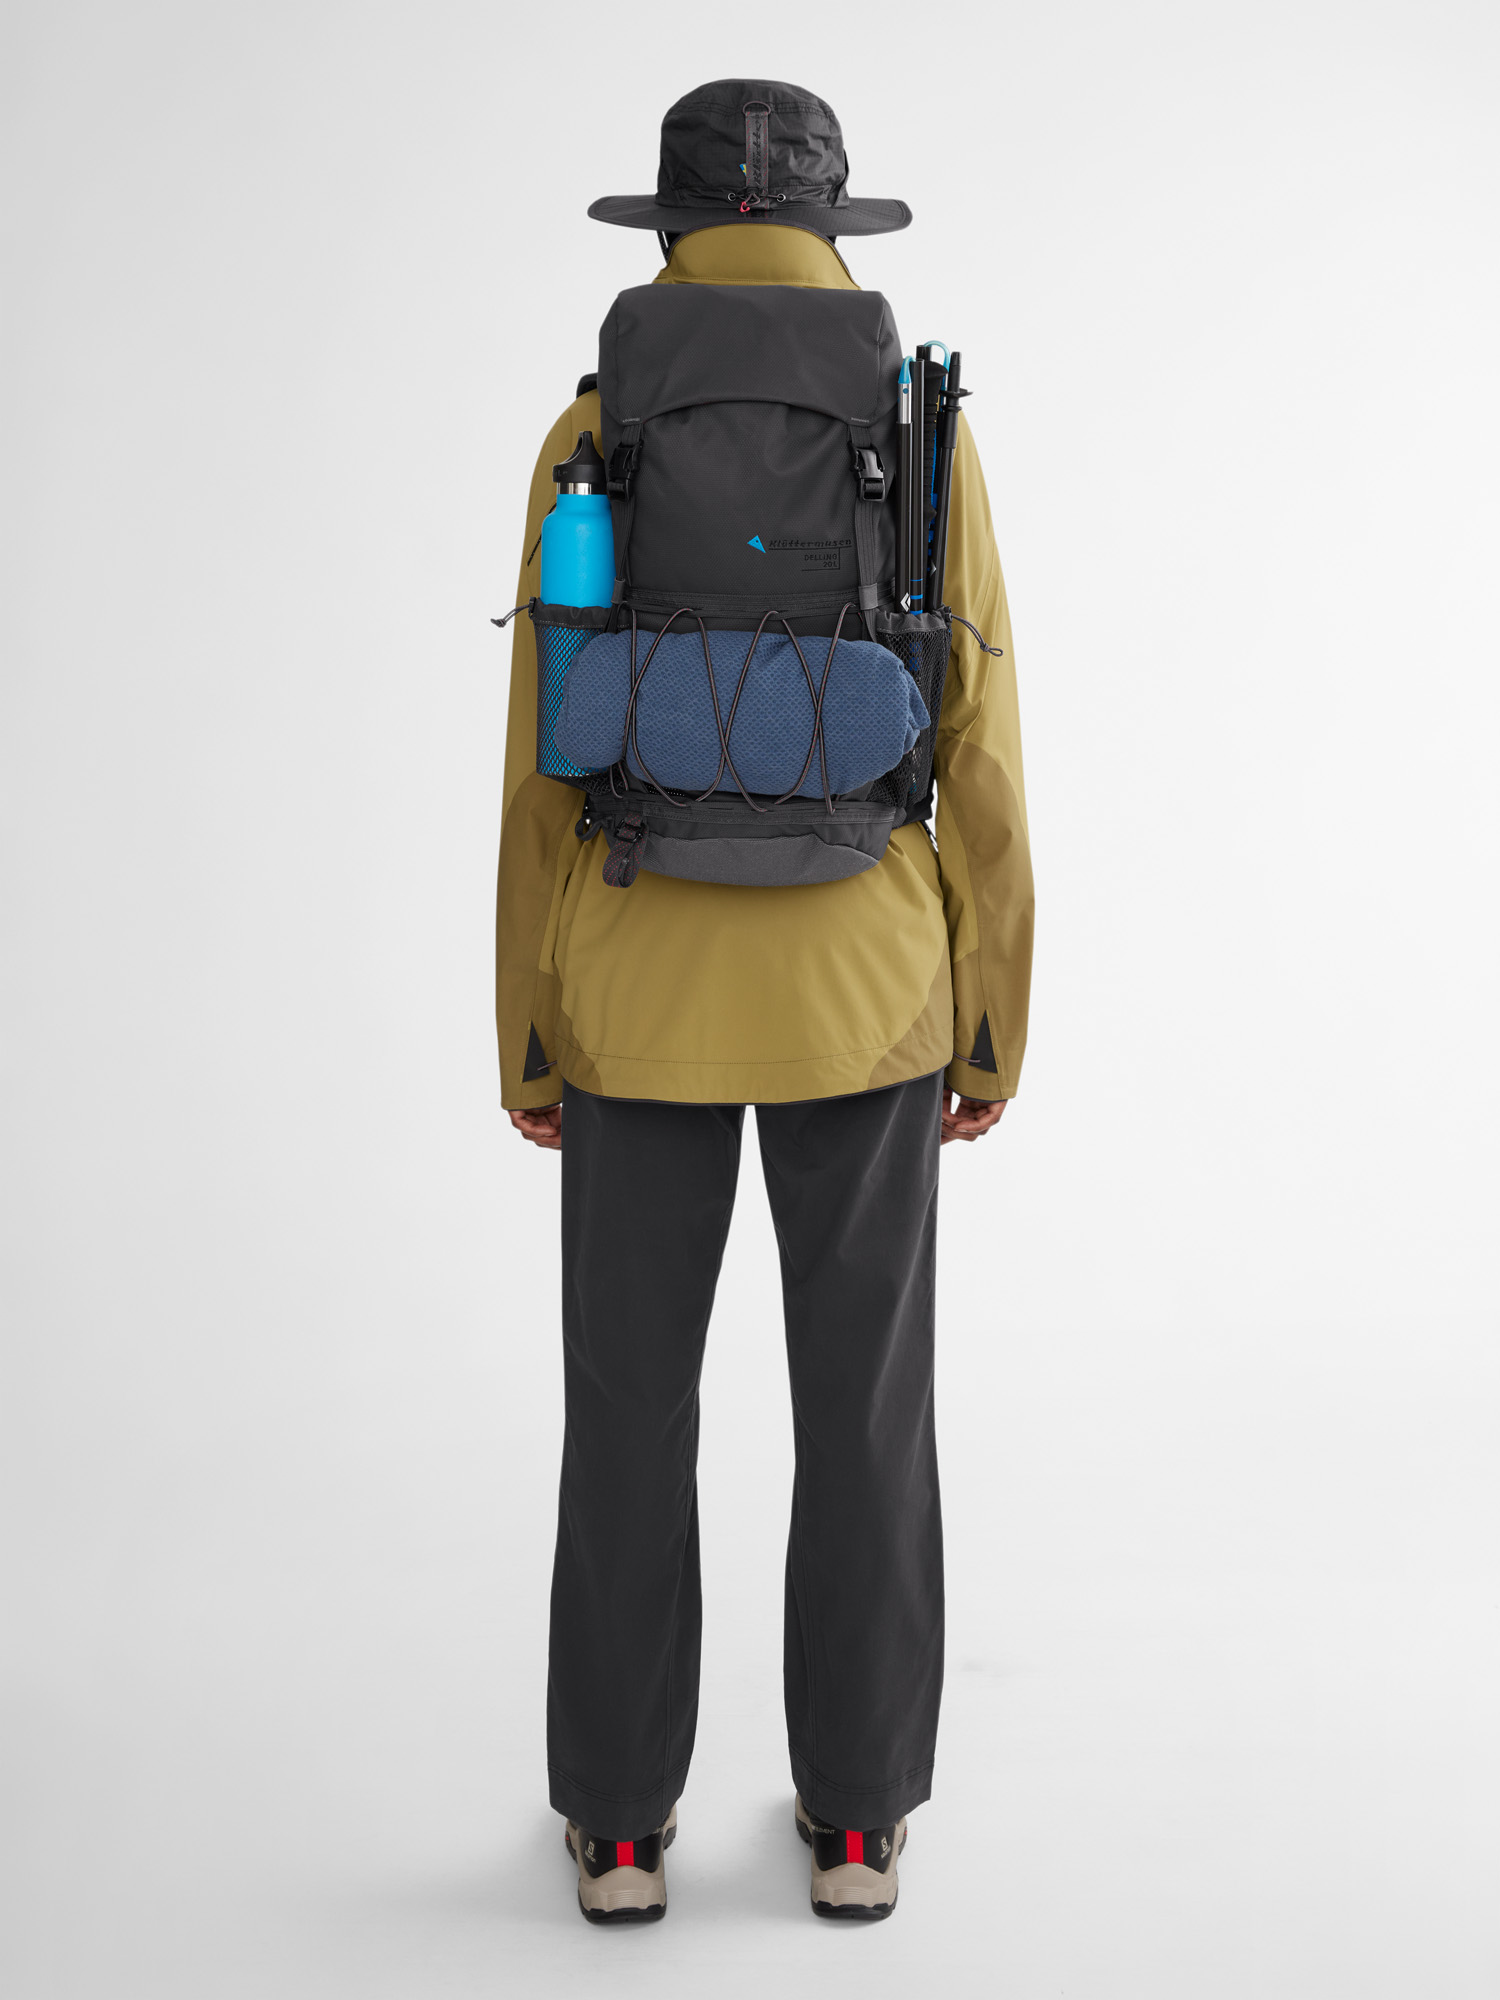 40447U11 - Delling Backpack 30L - Burnt Russet